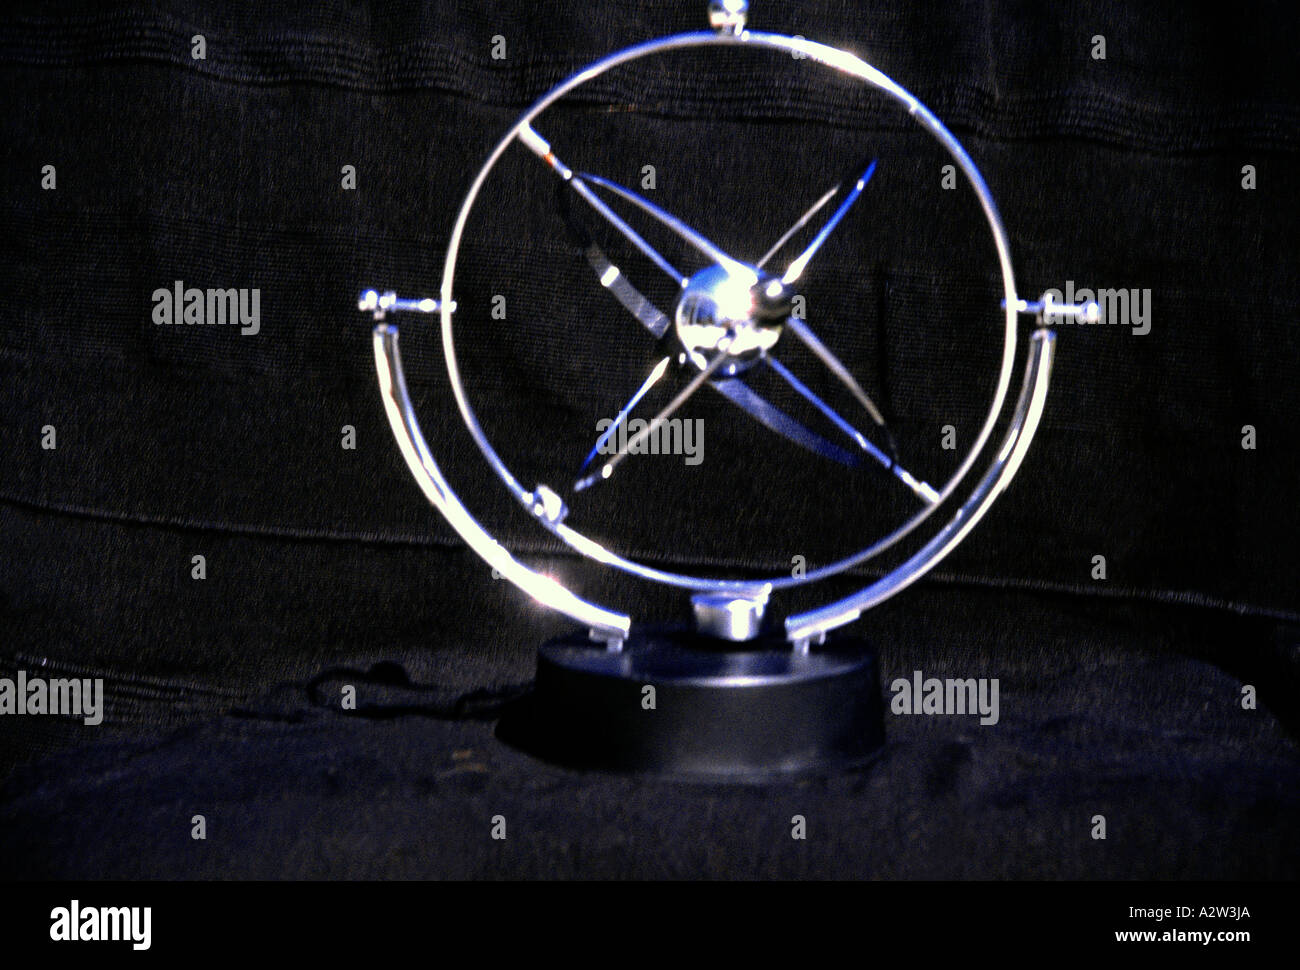 Kinetische Kunst "Kosmos" dreht durch umgekehrte Polarität magnetische  Stockfotografie - Alamy